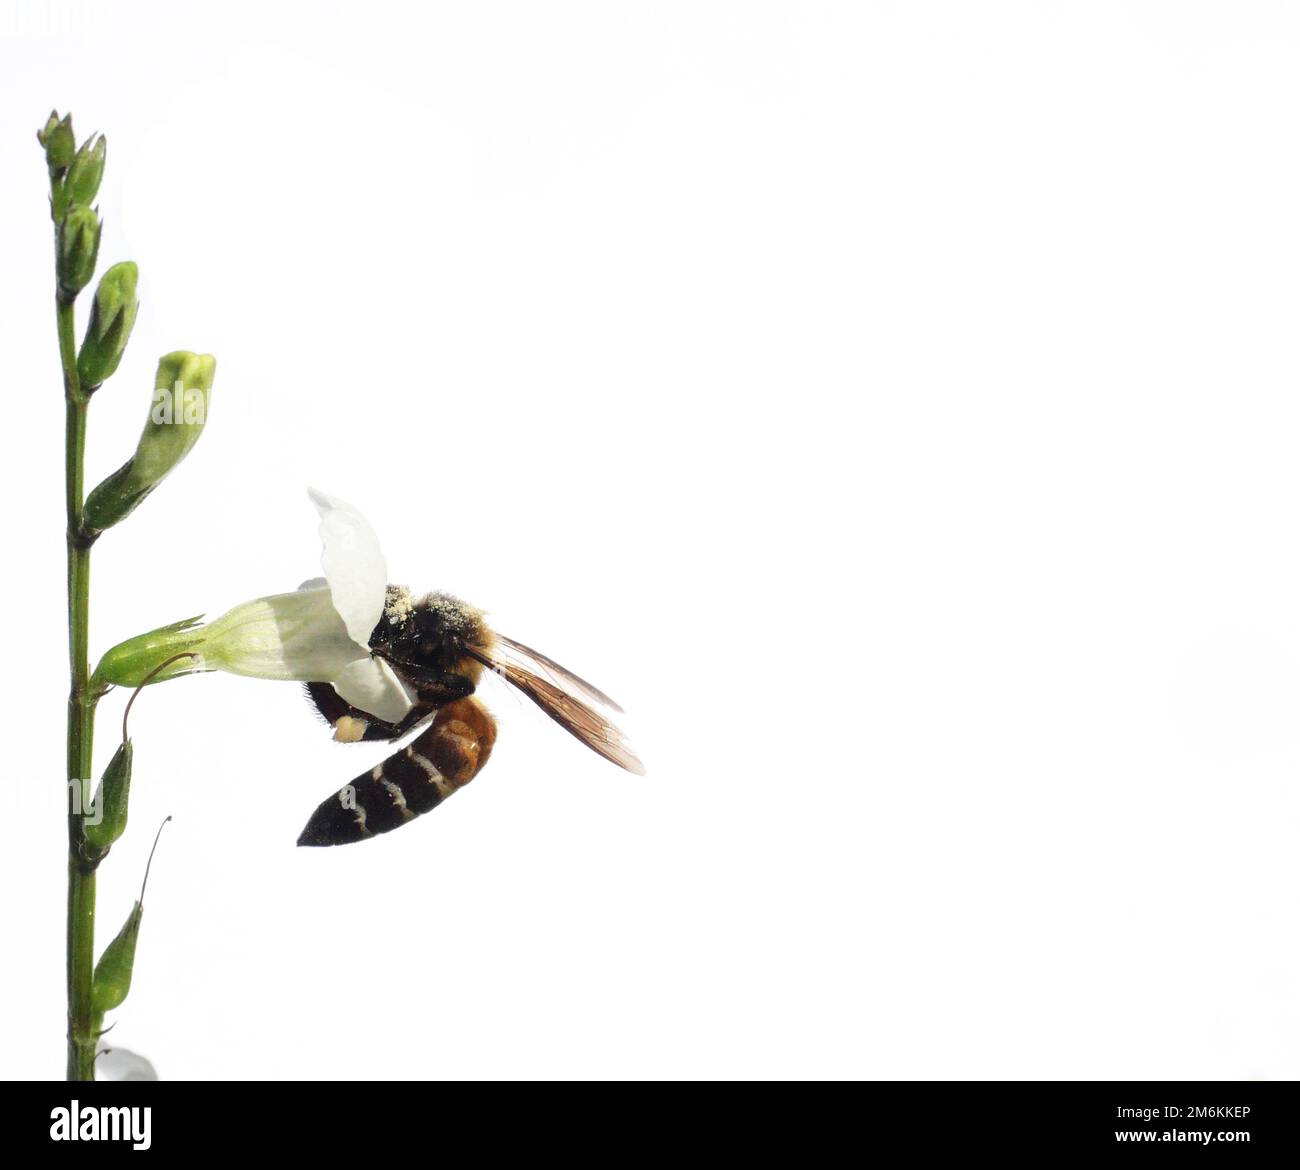 Ape gigante miele alla ricerca di nettare su bianco viola cinese o coromandel o flossguanto strisciante ( Asystasia gangetica ) fioriscono in campo isolato su bianco Foto Stock